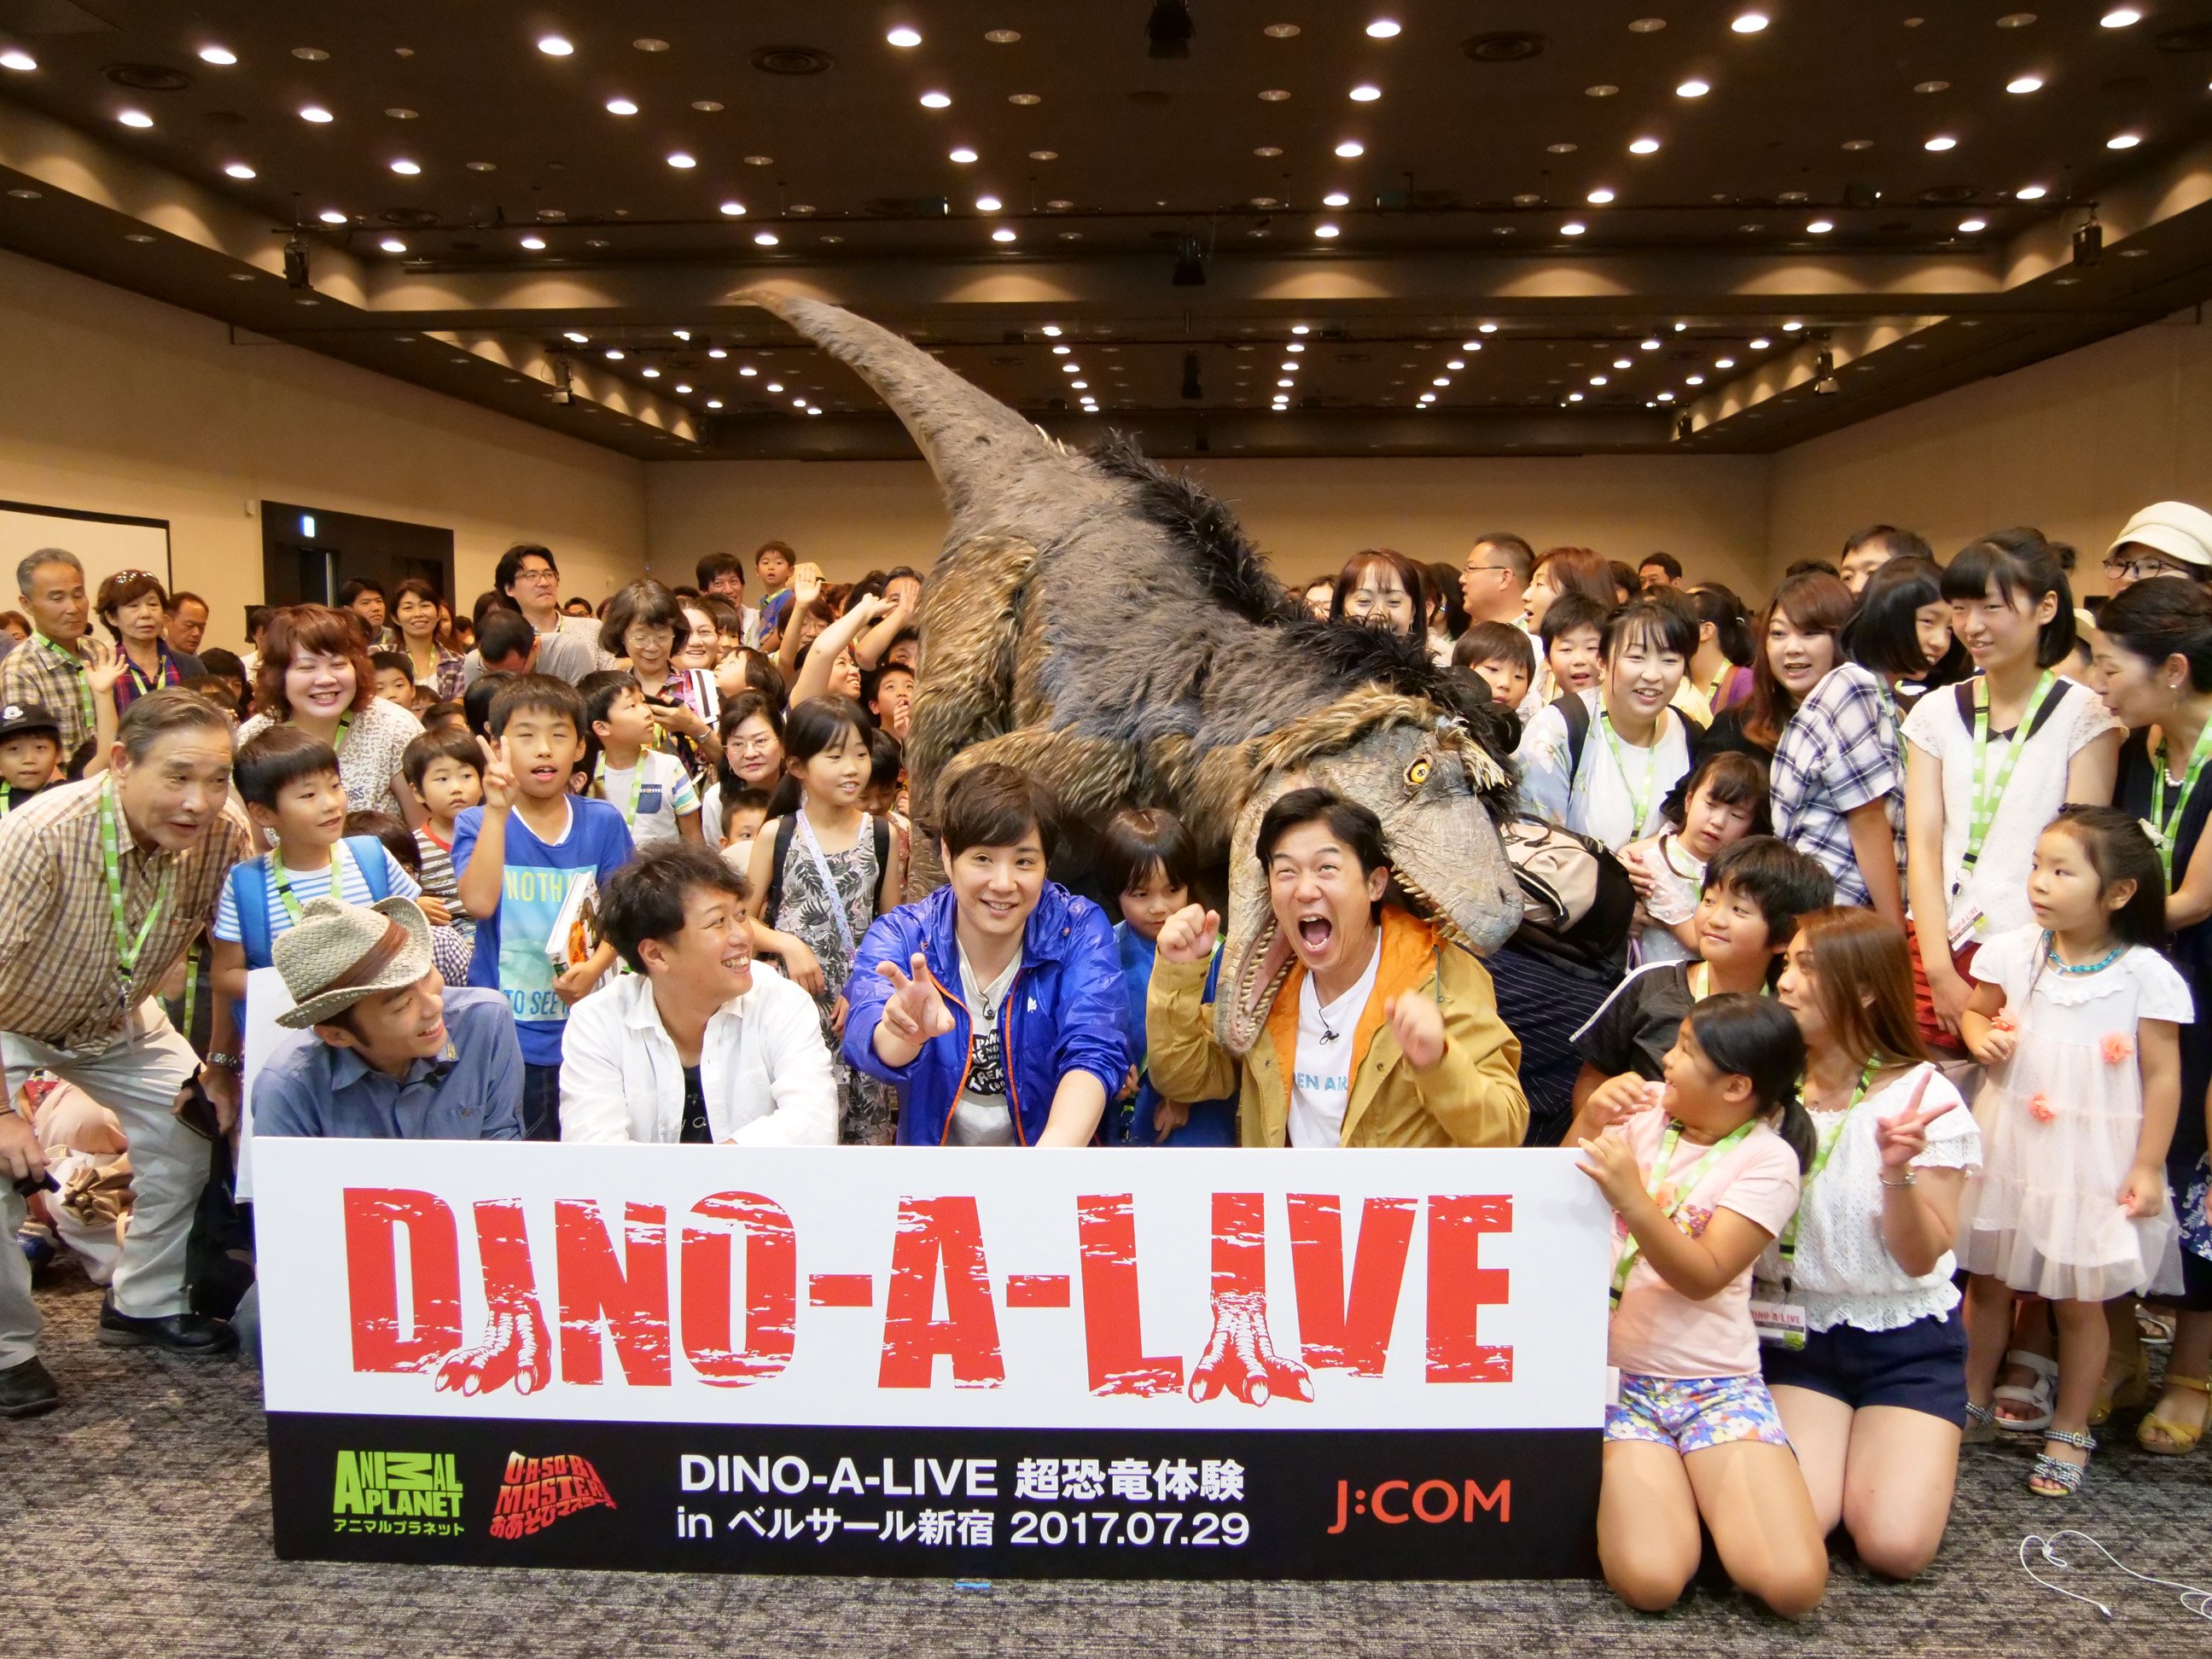 DINO-A-LIVE 超恐竜体験